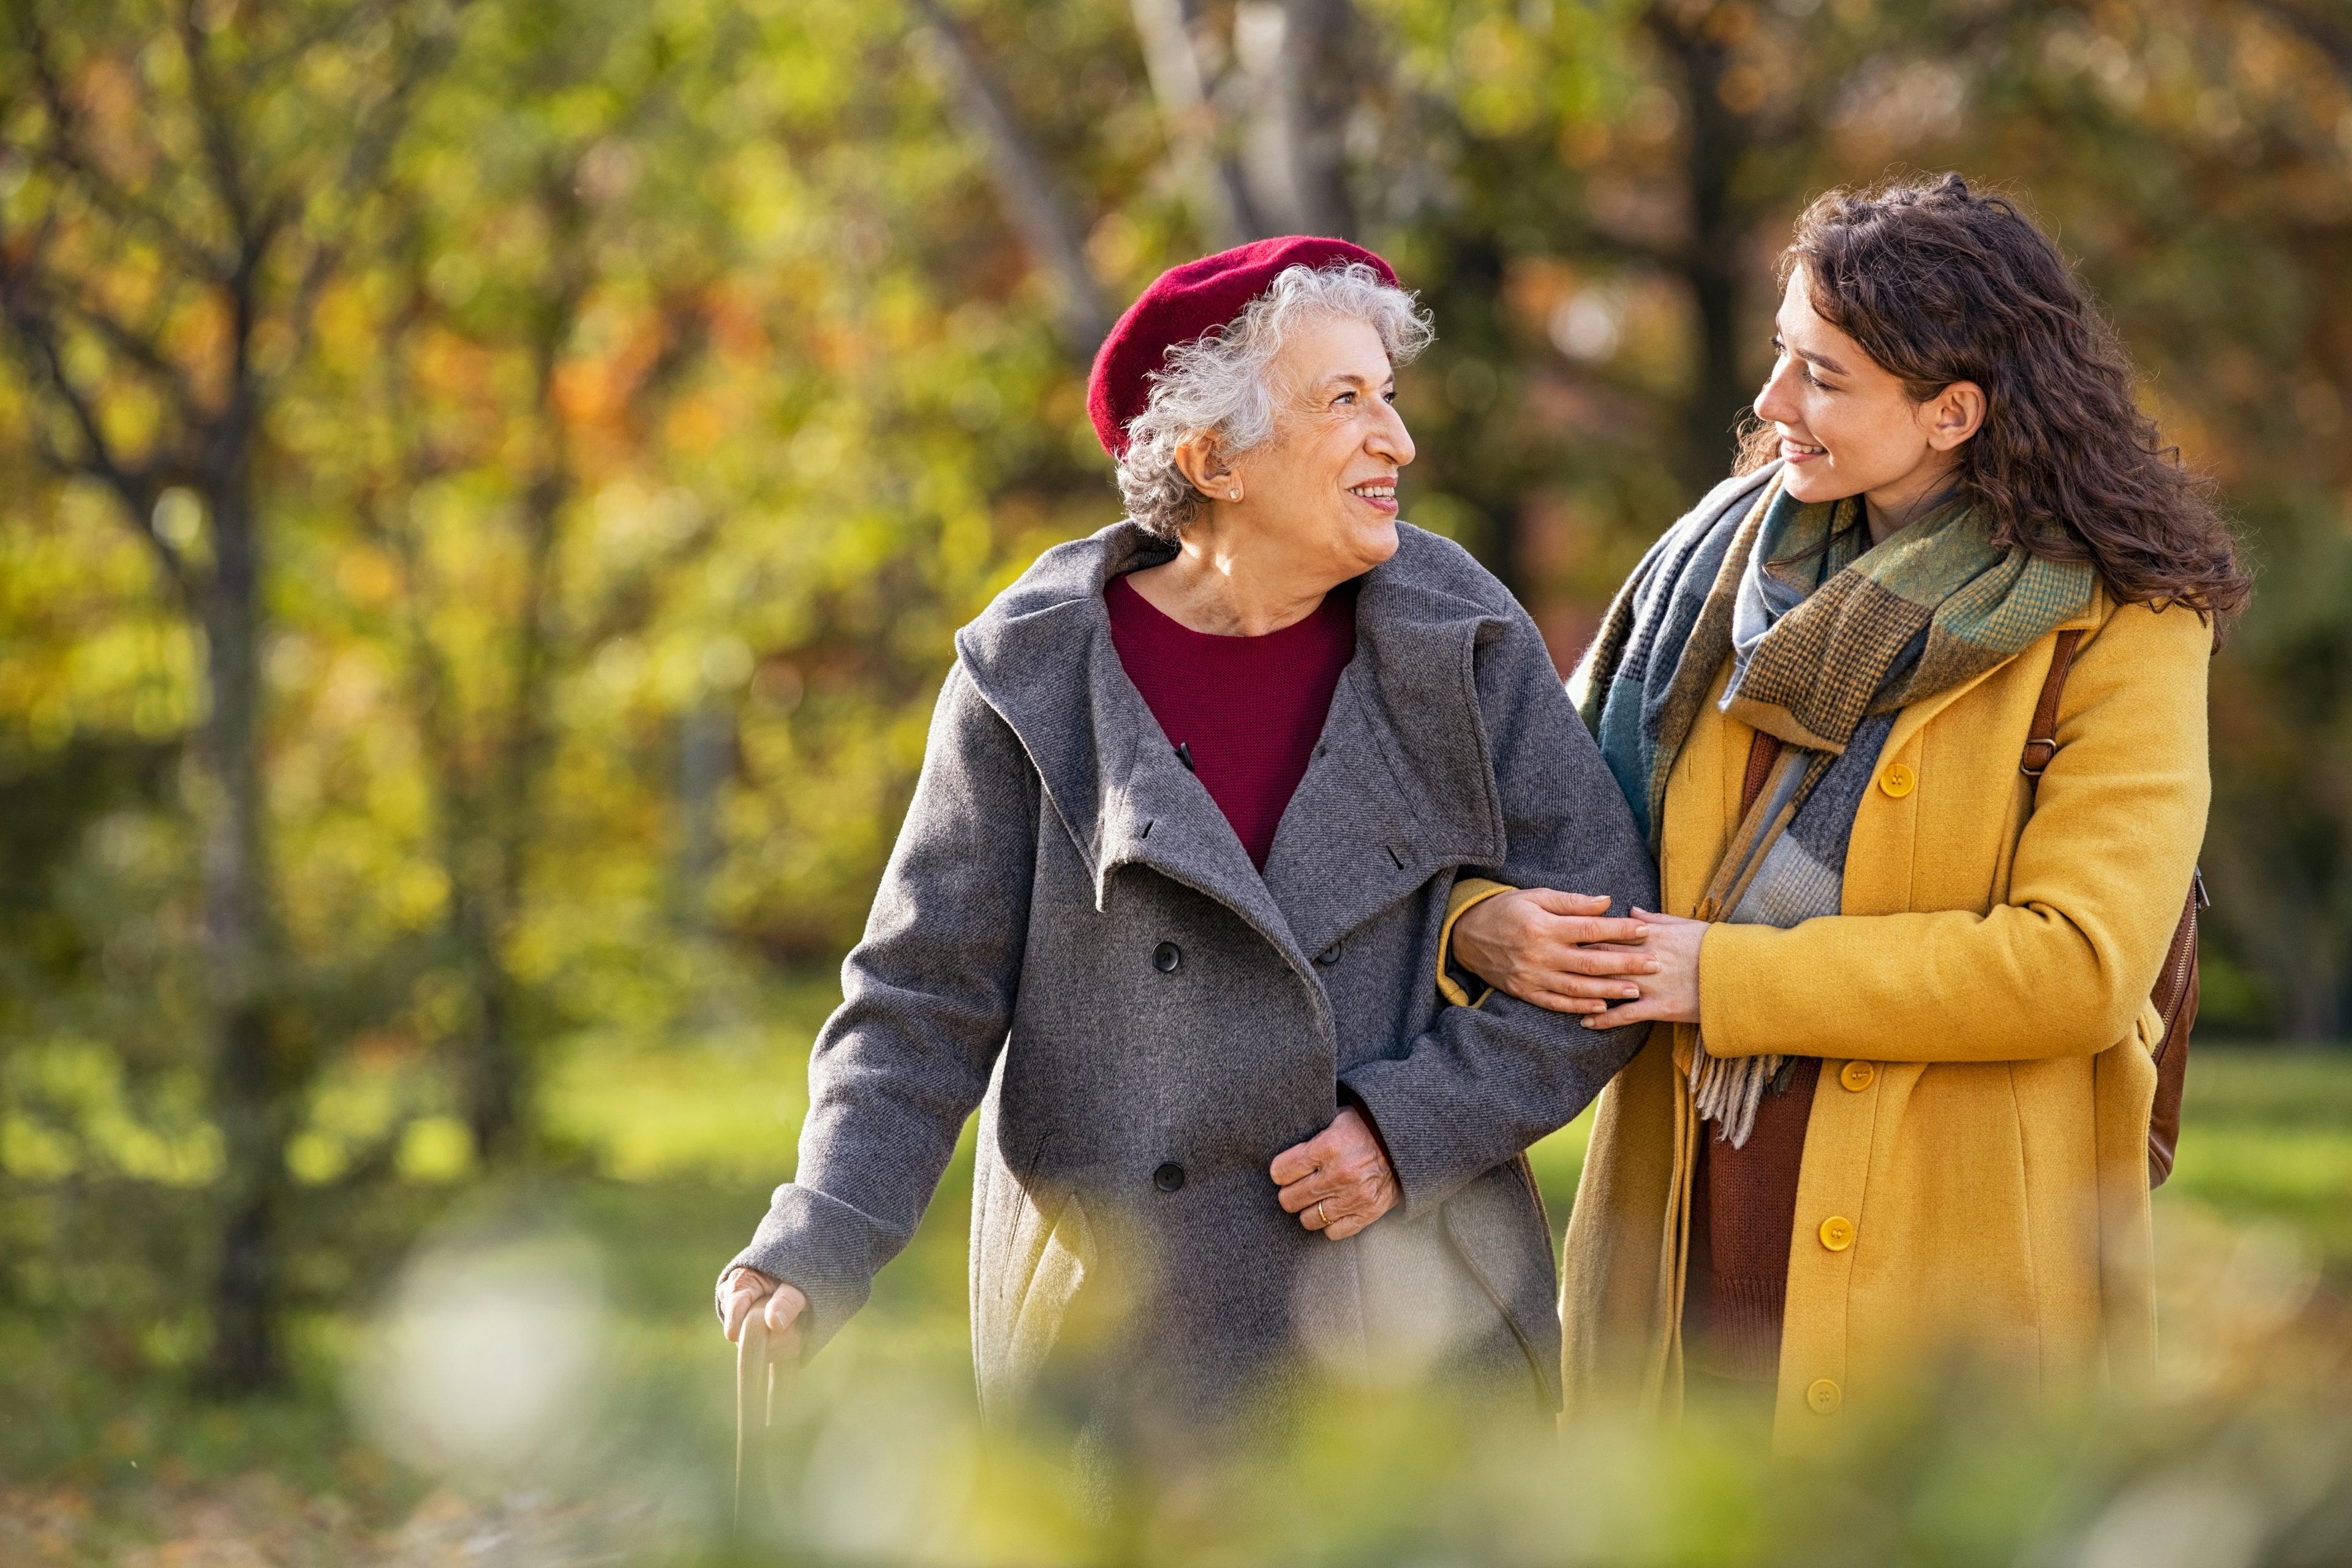 Mängden mediciner som äldre äter kan orsaka sjukdom. Involvering av äldre och deras anhöriga i behandlingen har visat sig kunna motverka detta. Foto: Shutterstock